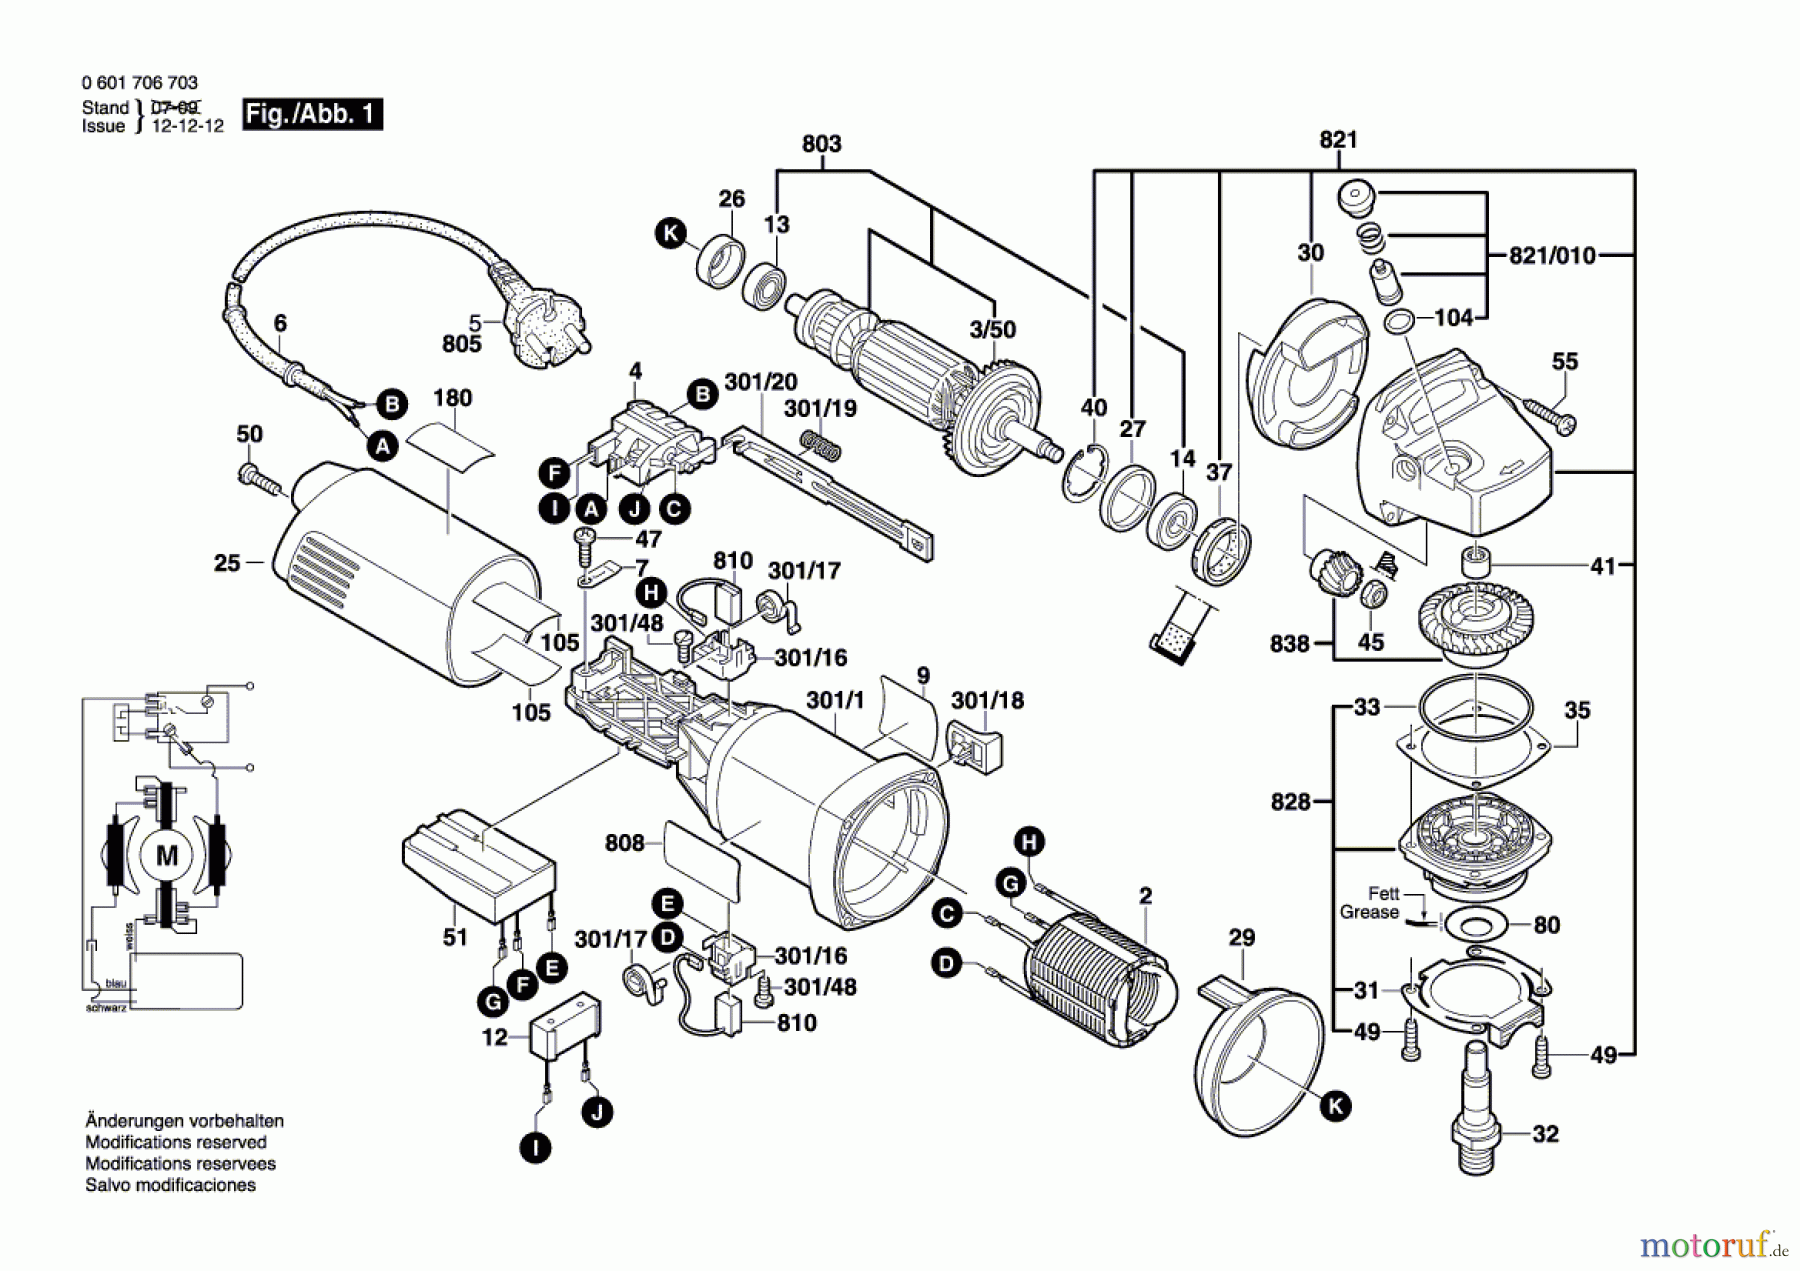  Bosch Werkzeug Winkelschleifer GWS 14-150 C Seite 1